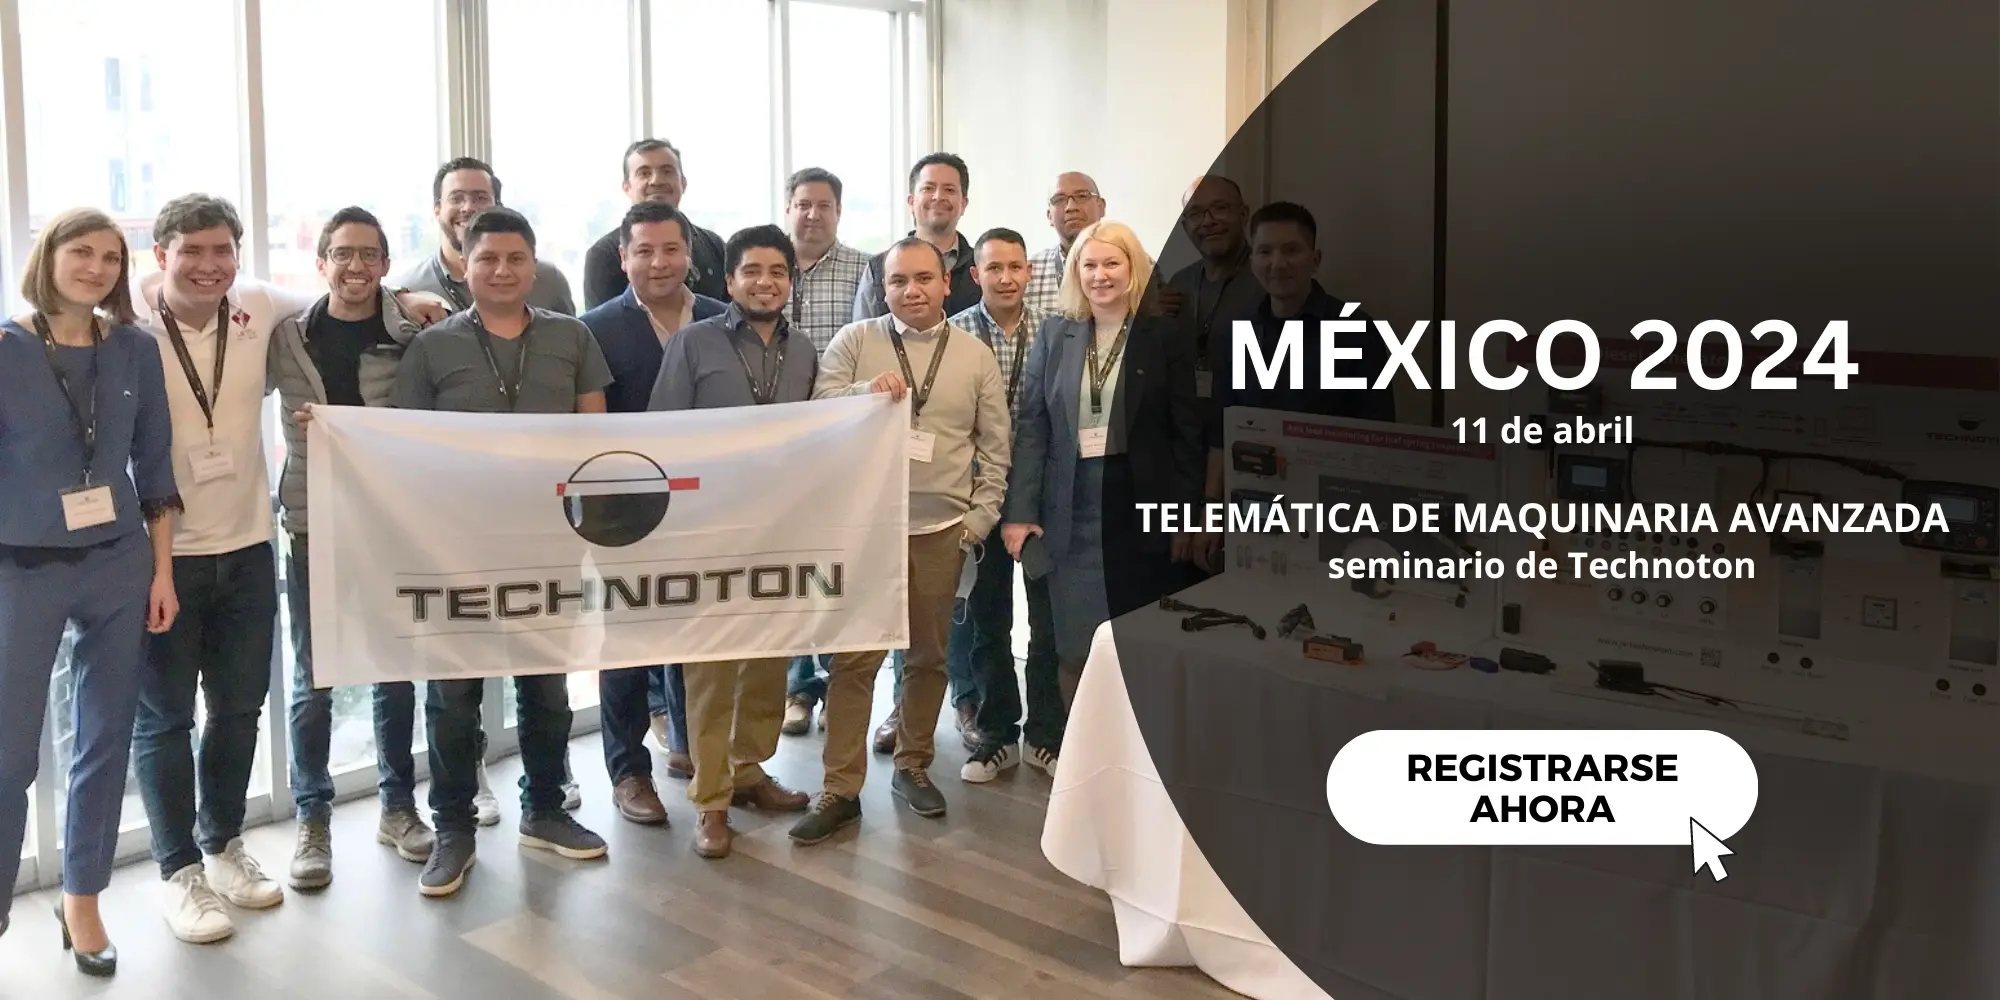 Visite el seminario de Technoton en la Ciudad de México